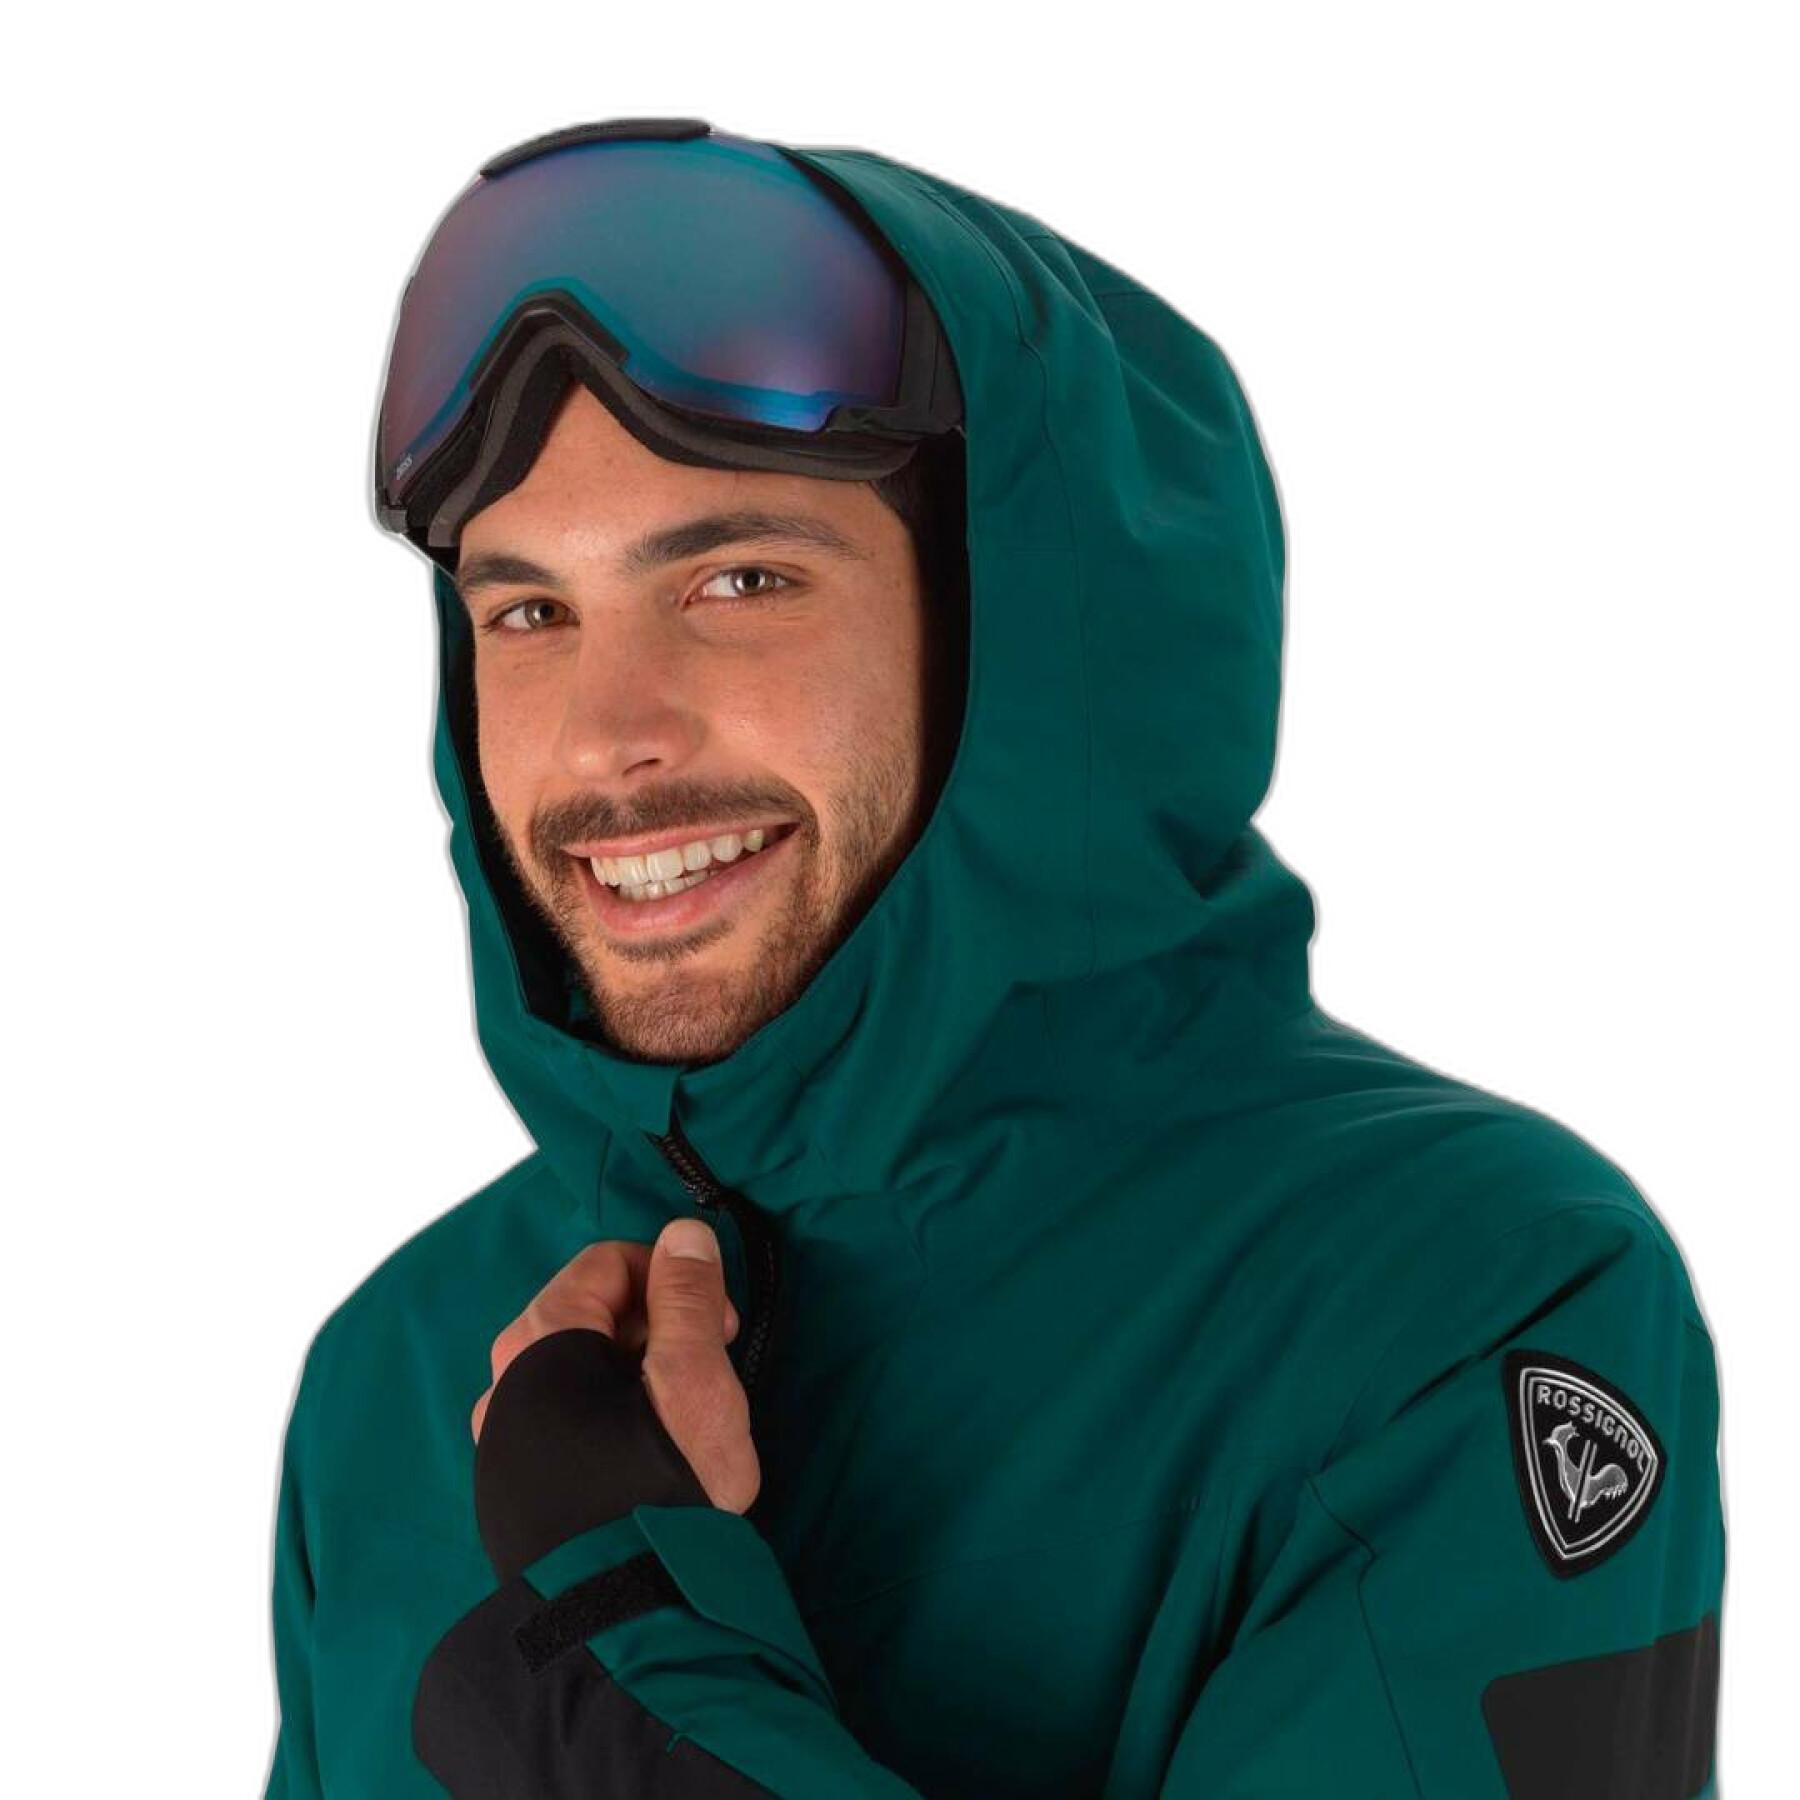 Ski jacket Rossignol Fonction